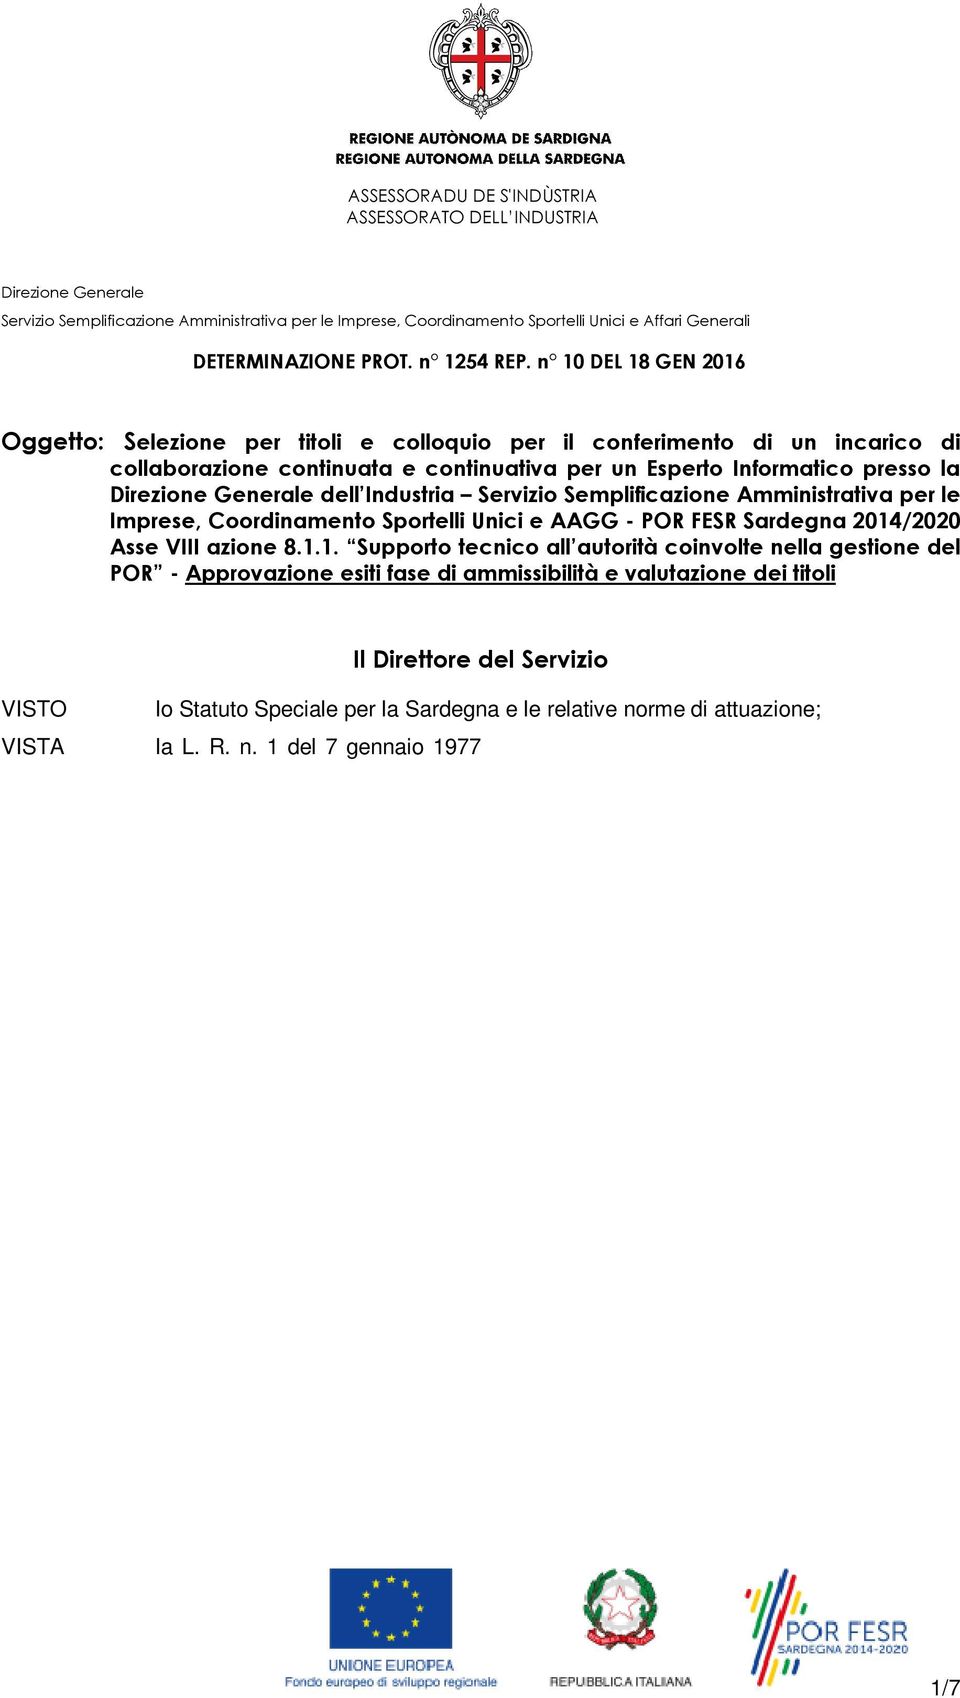 Semplificazione Amministrativa per le Imprese, Coordinamento Sportelli Unici e AAGG - POR FESR Sardegna 2014